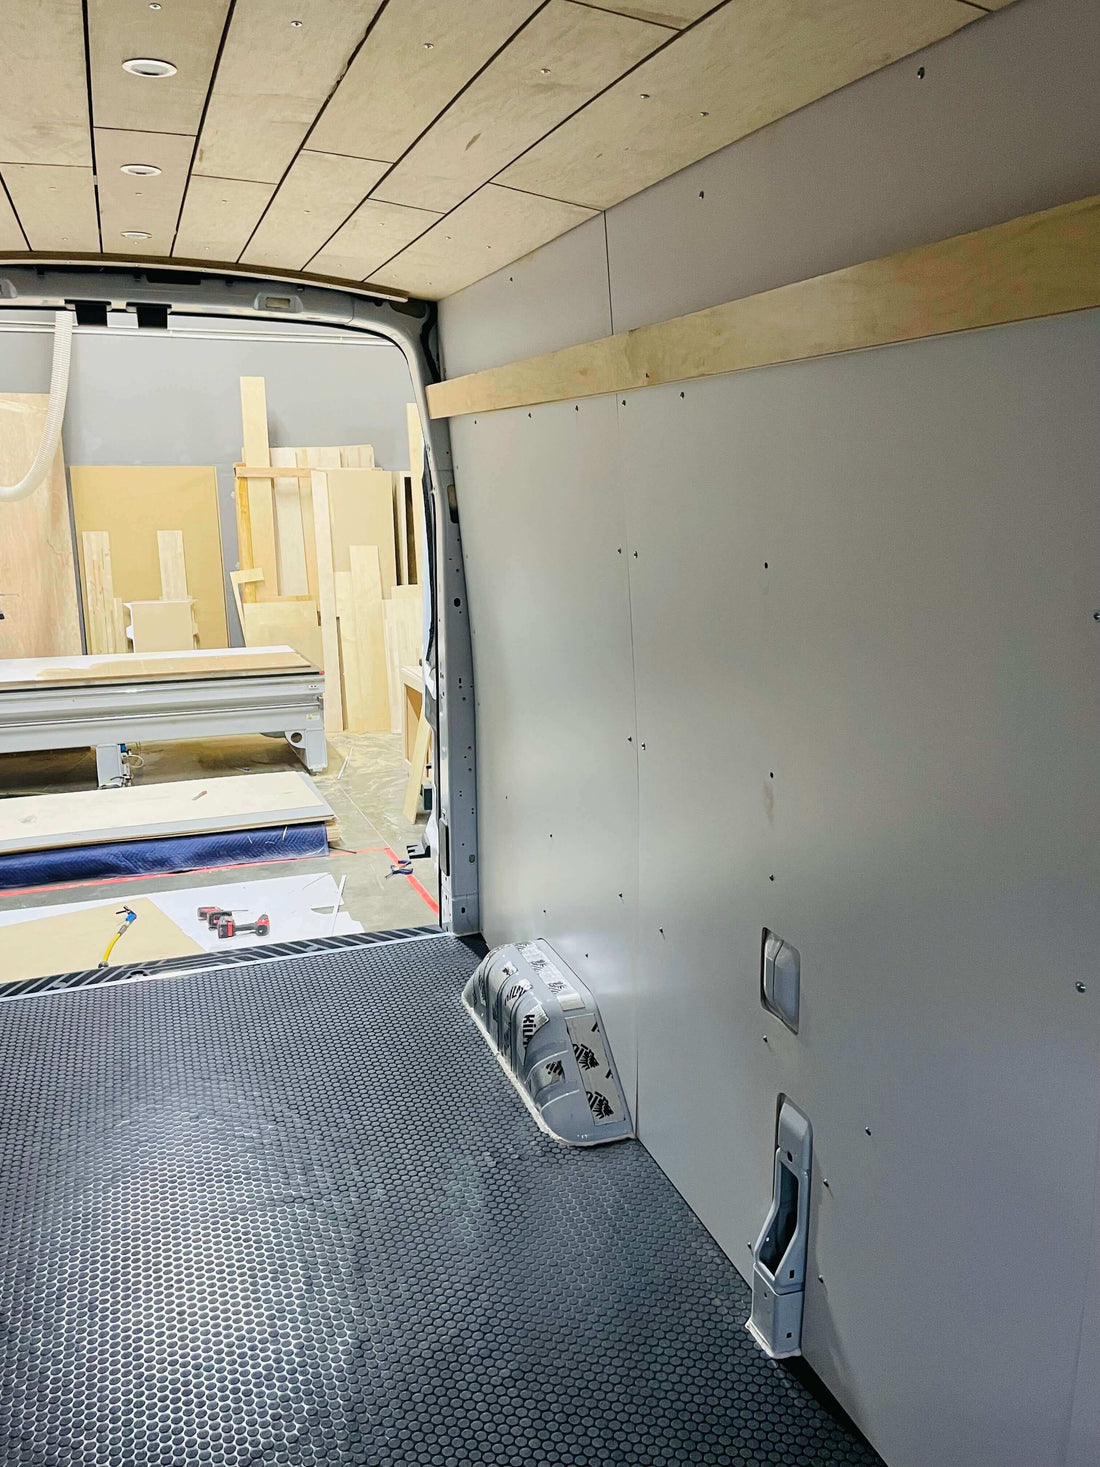 Transit Van Wall Panel Kit Installed